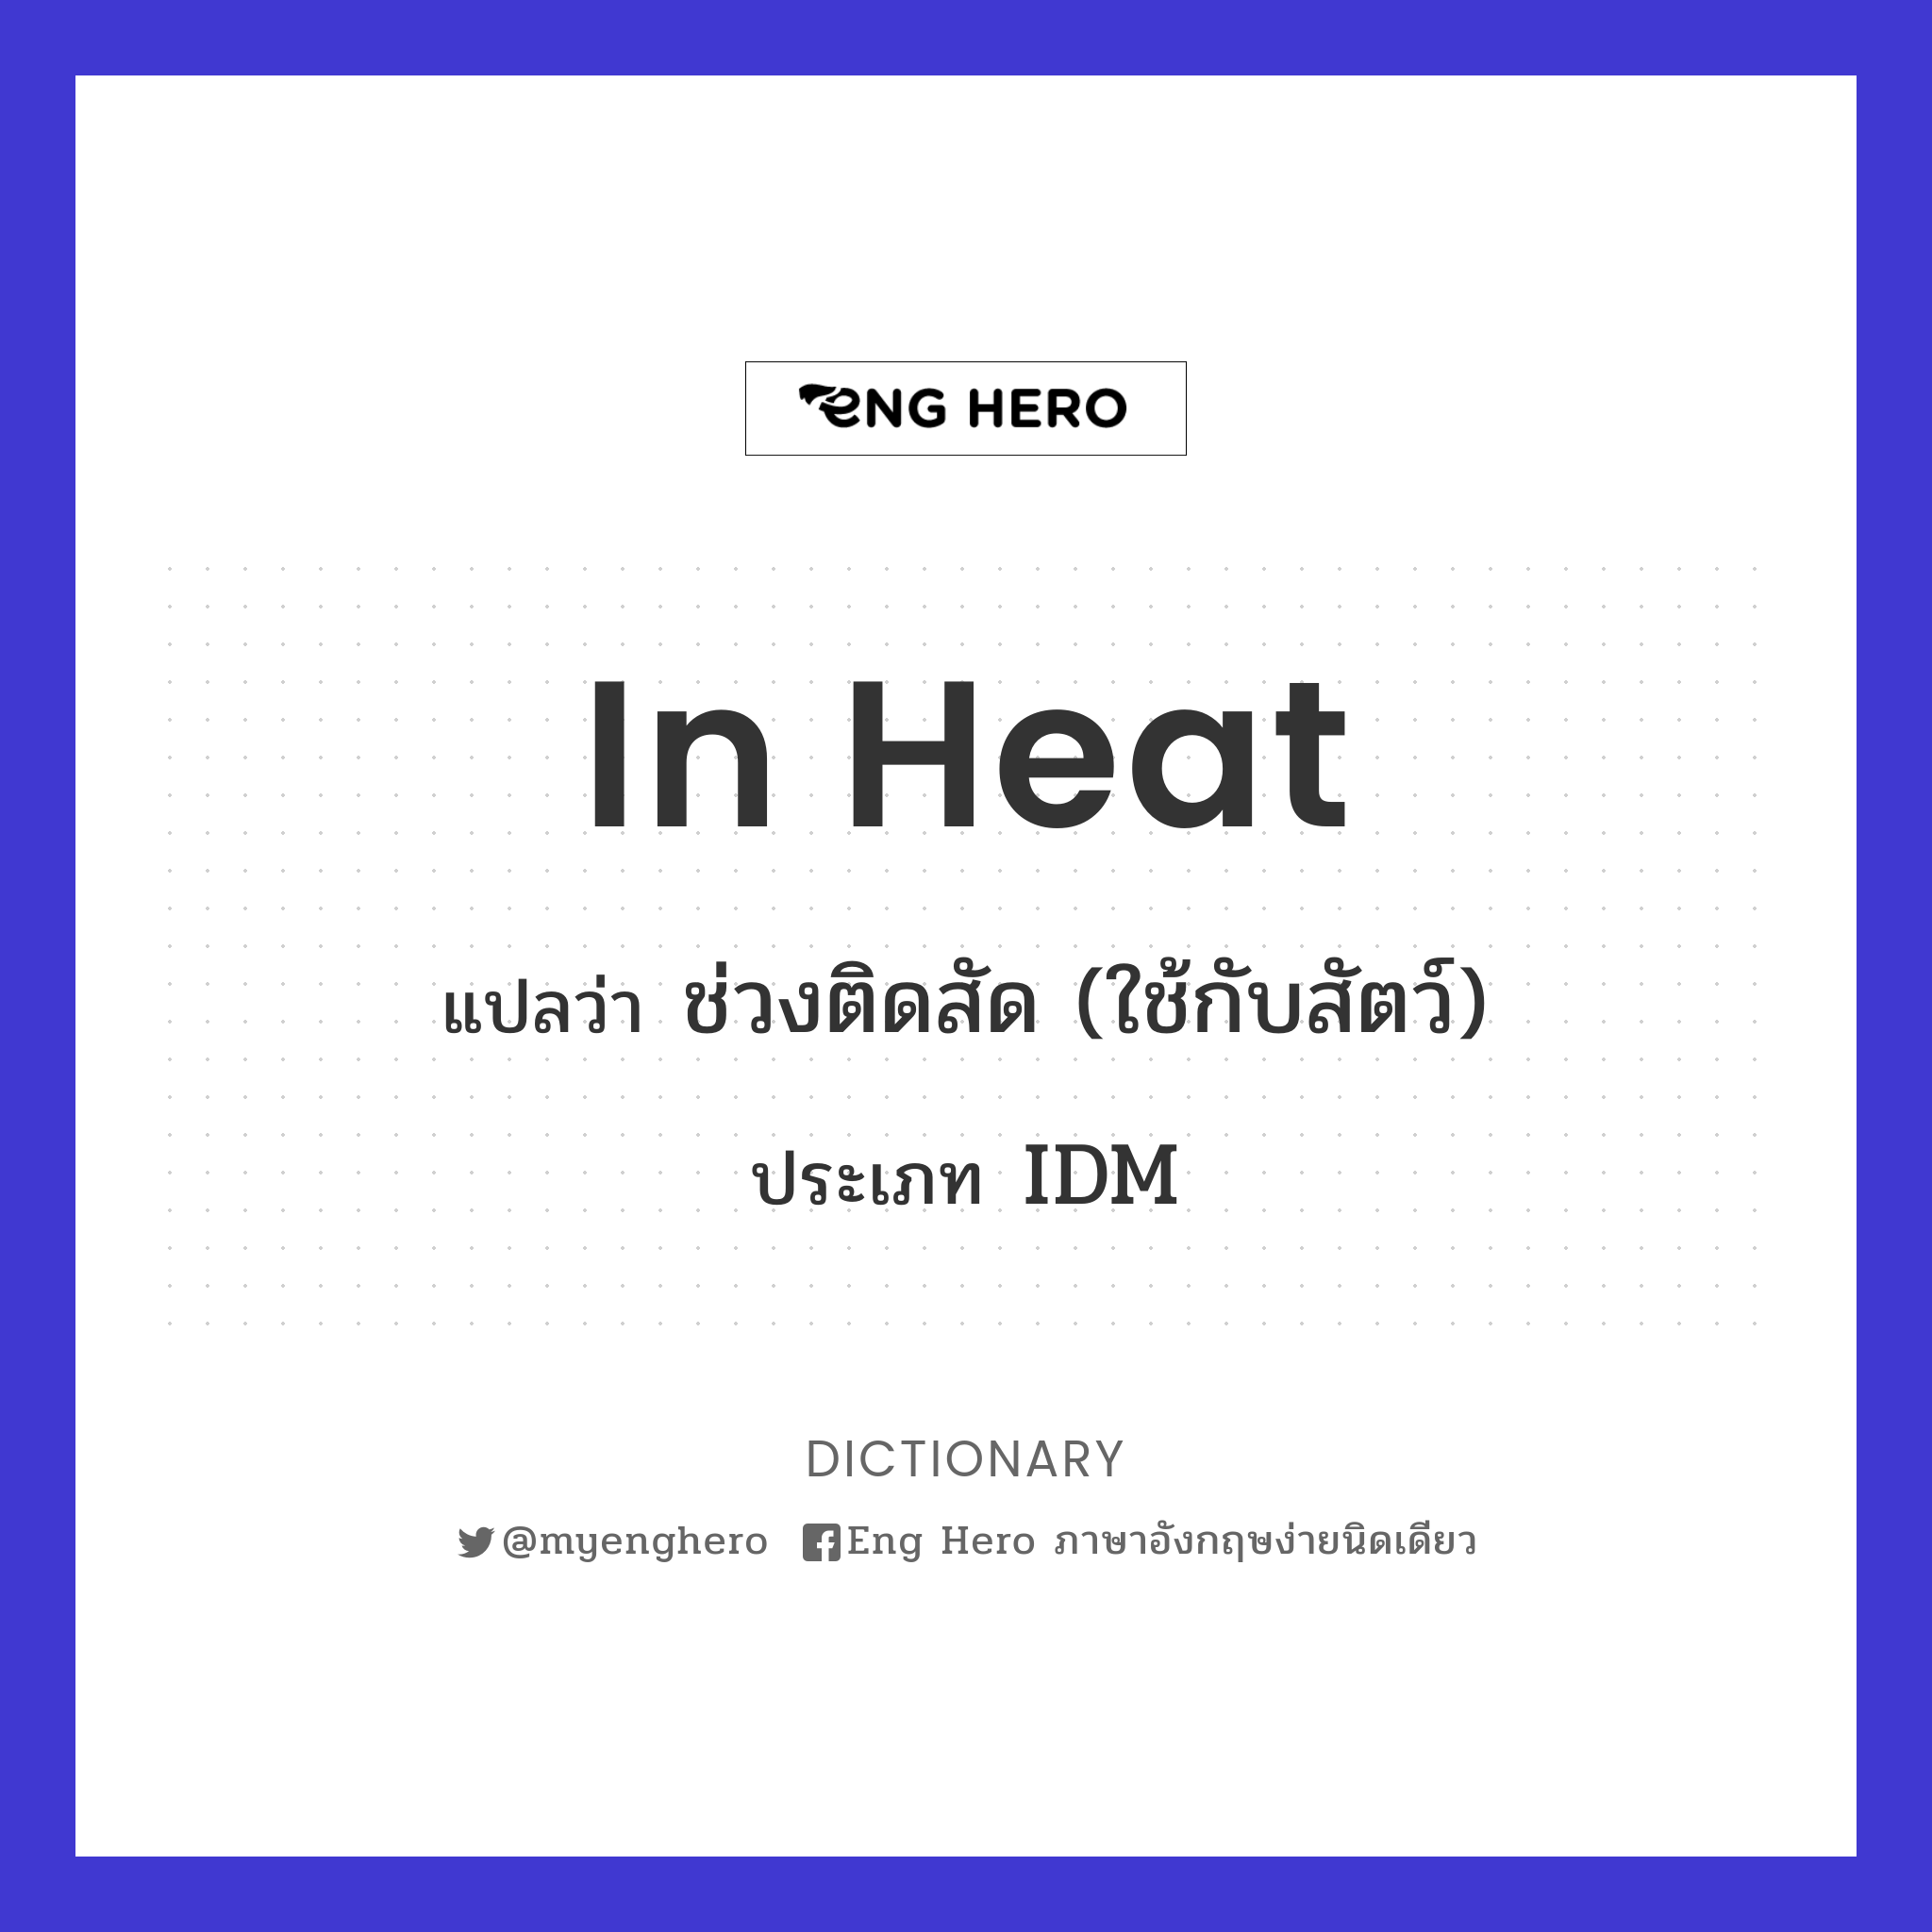 in heat